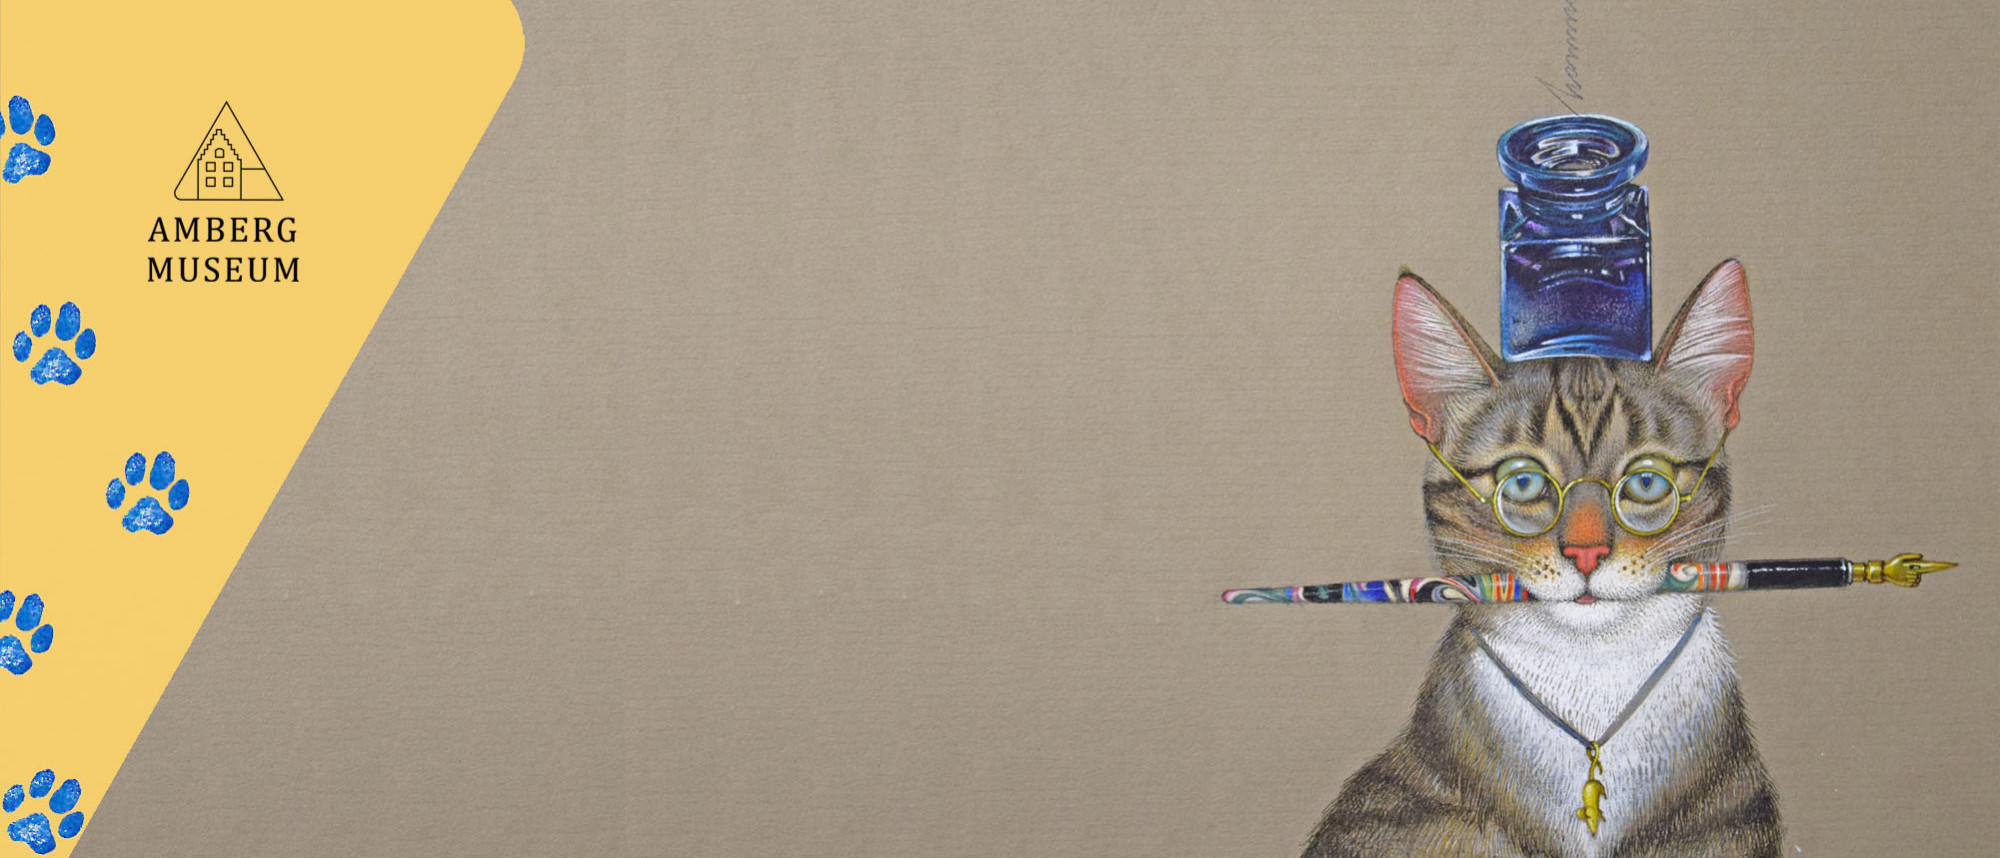 Gemalte, getigerte Katze mit runder Brille, Schreibfeder im Maul und Tintenfass auf dem Kopf vor braunem Hintergrund.